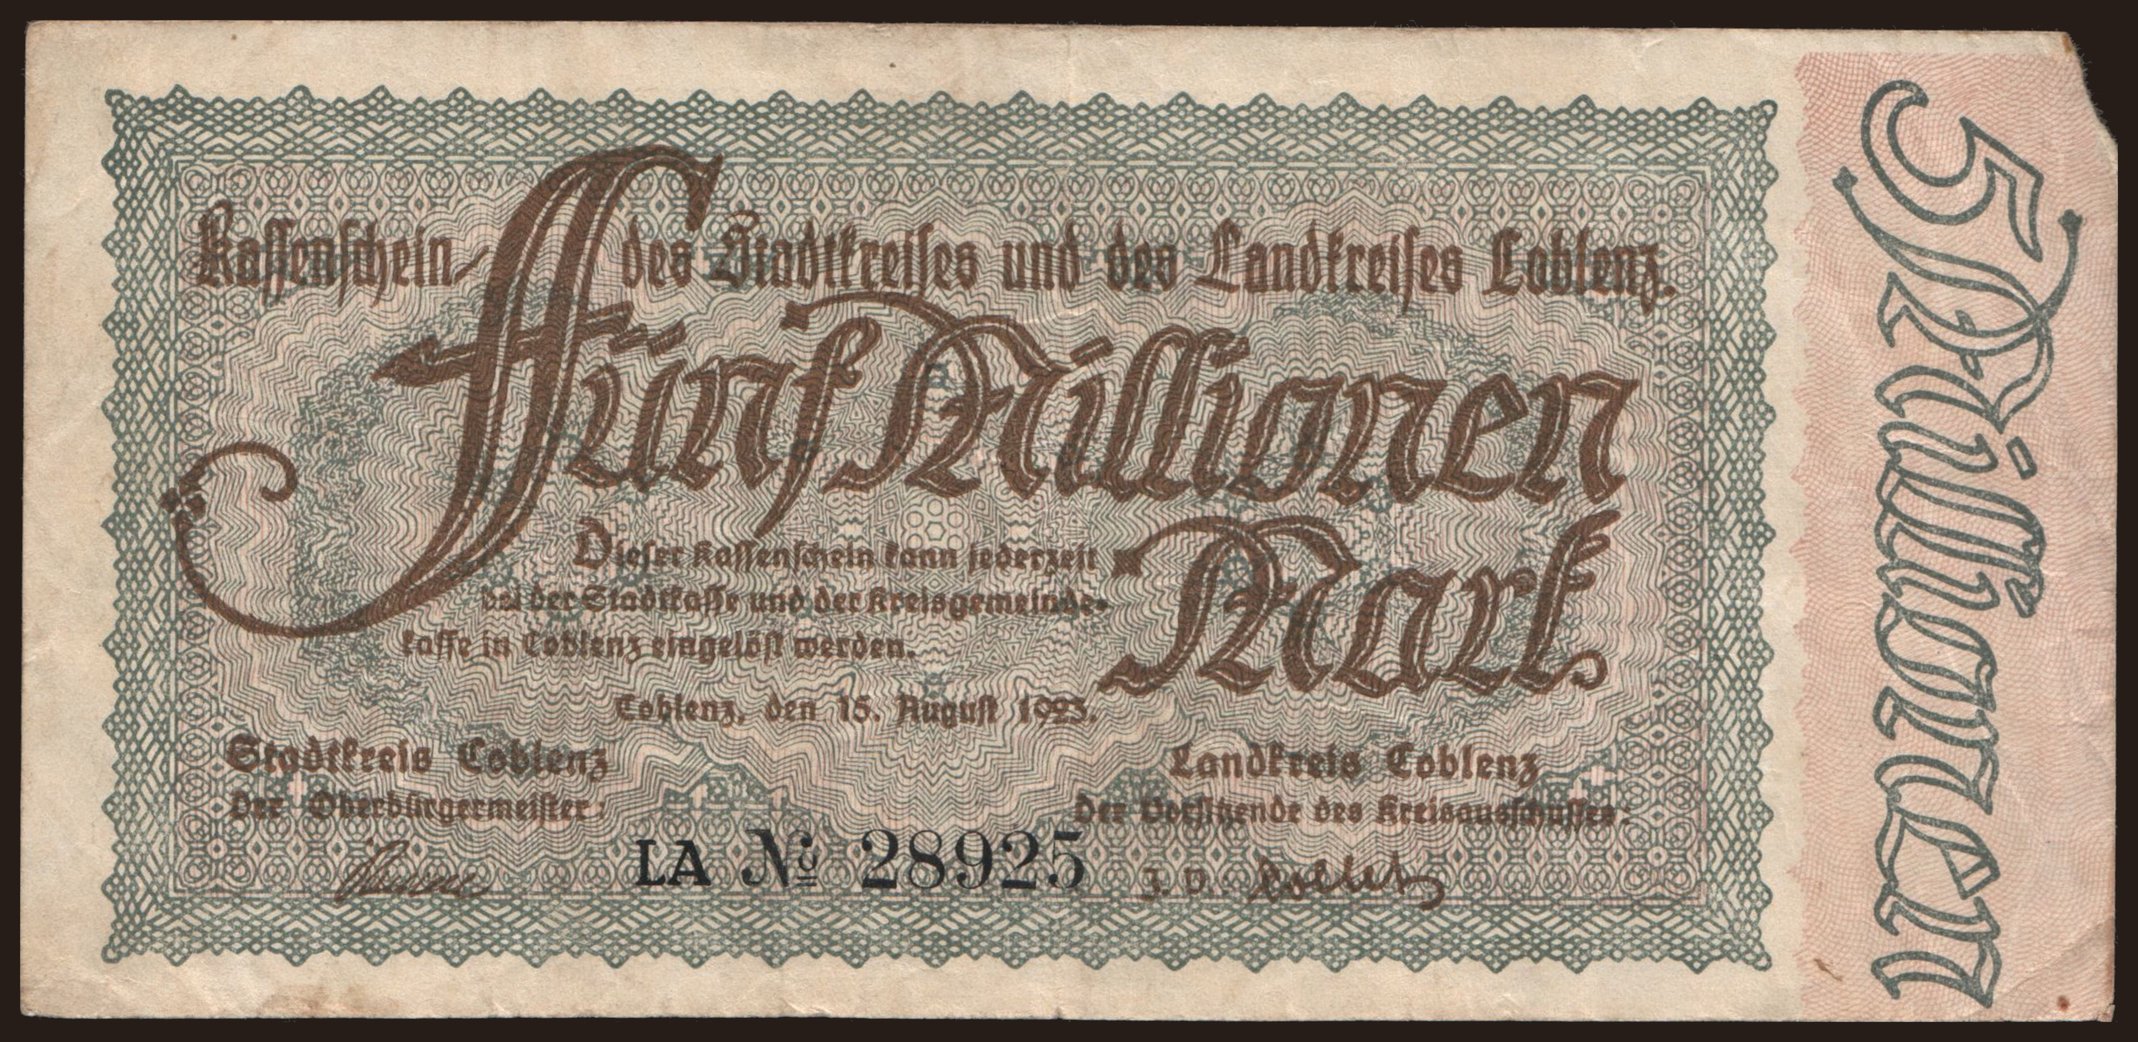 Coblenz/ Stadtkreis und Landkreis, 5.000.000 Mark, 1923